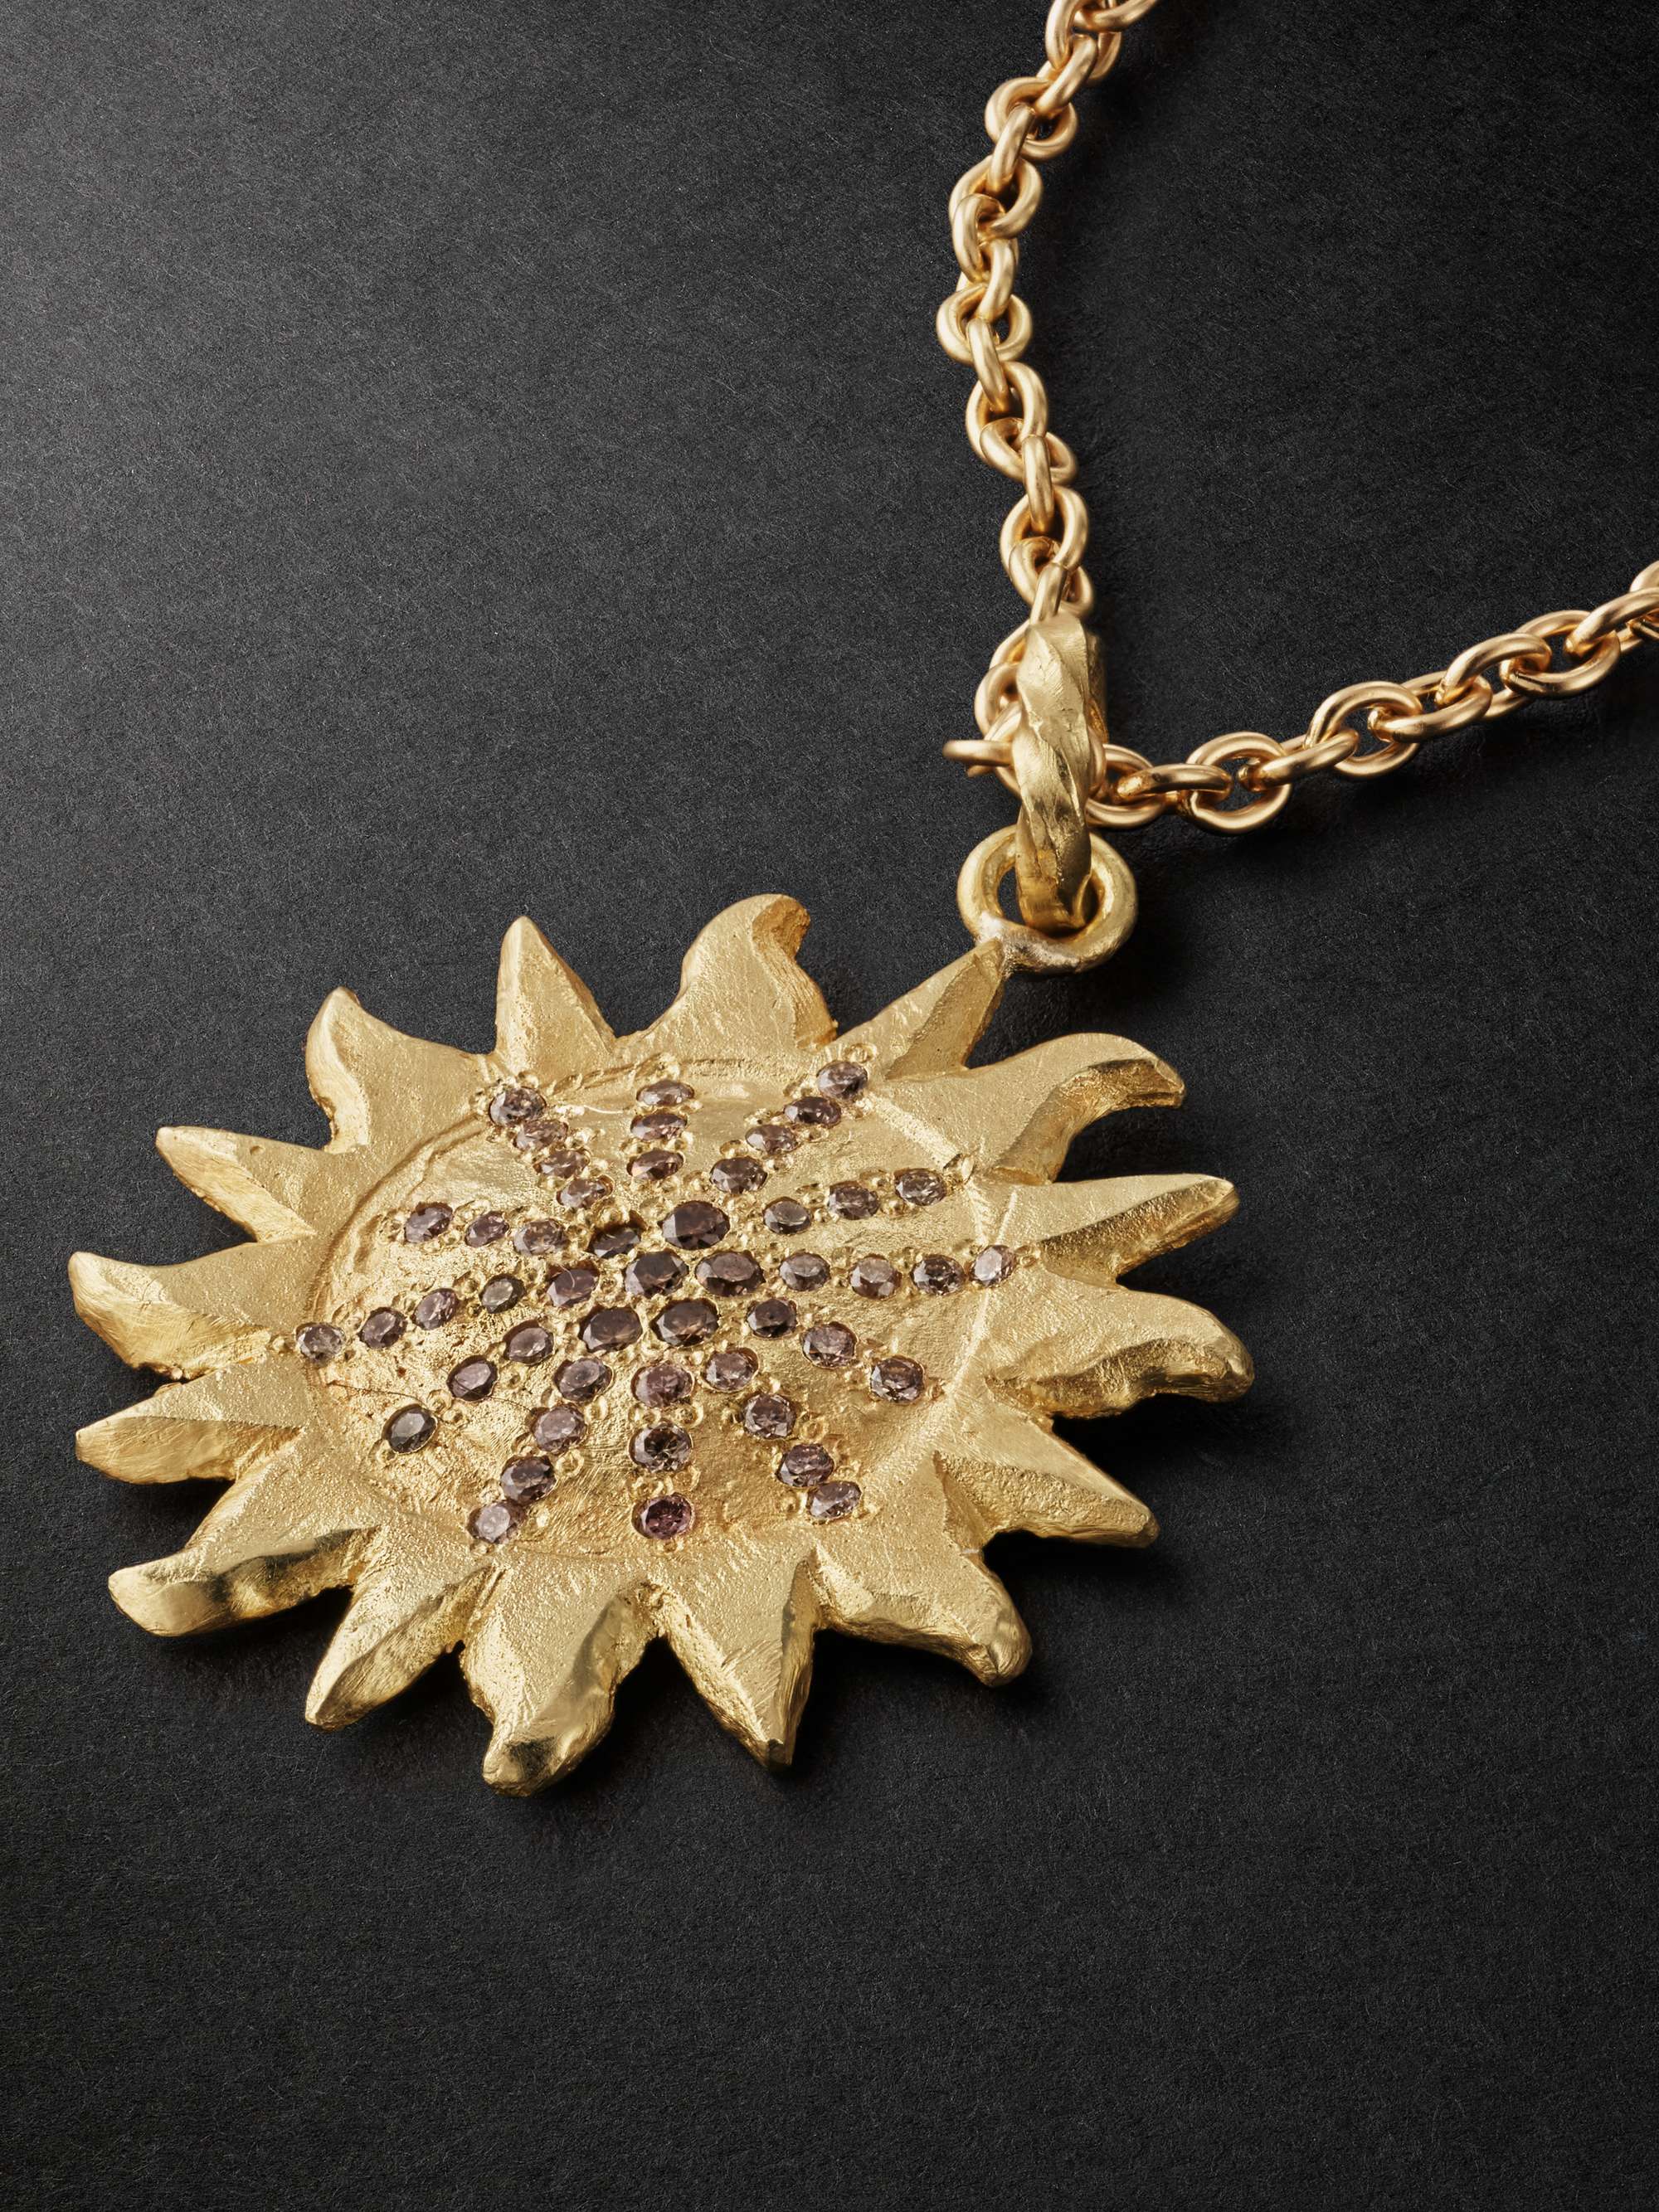 ELHANATI Sun Gold Diamond Pendant Necklace